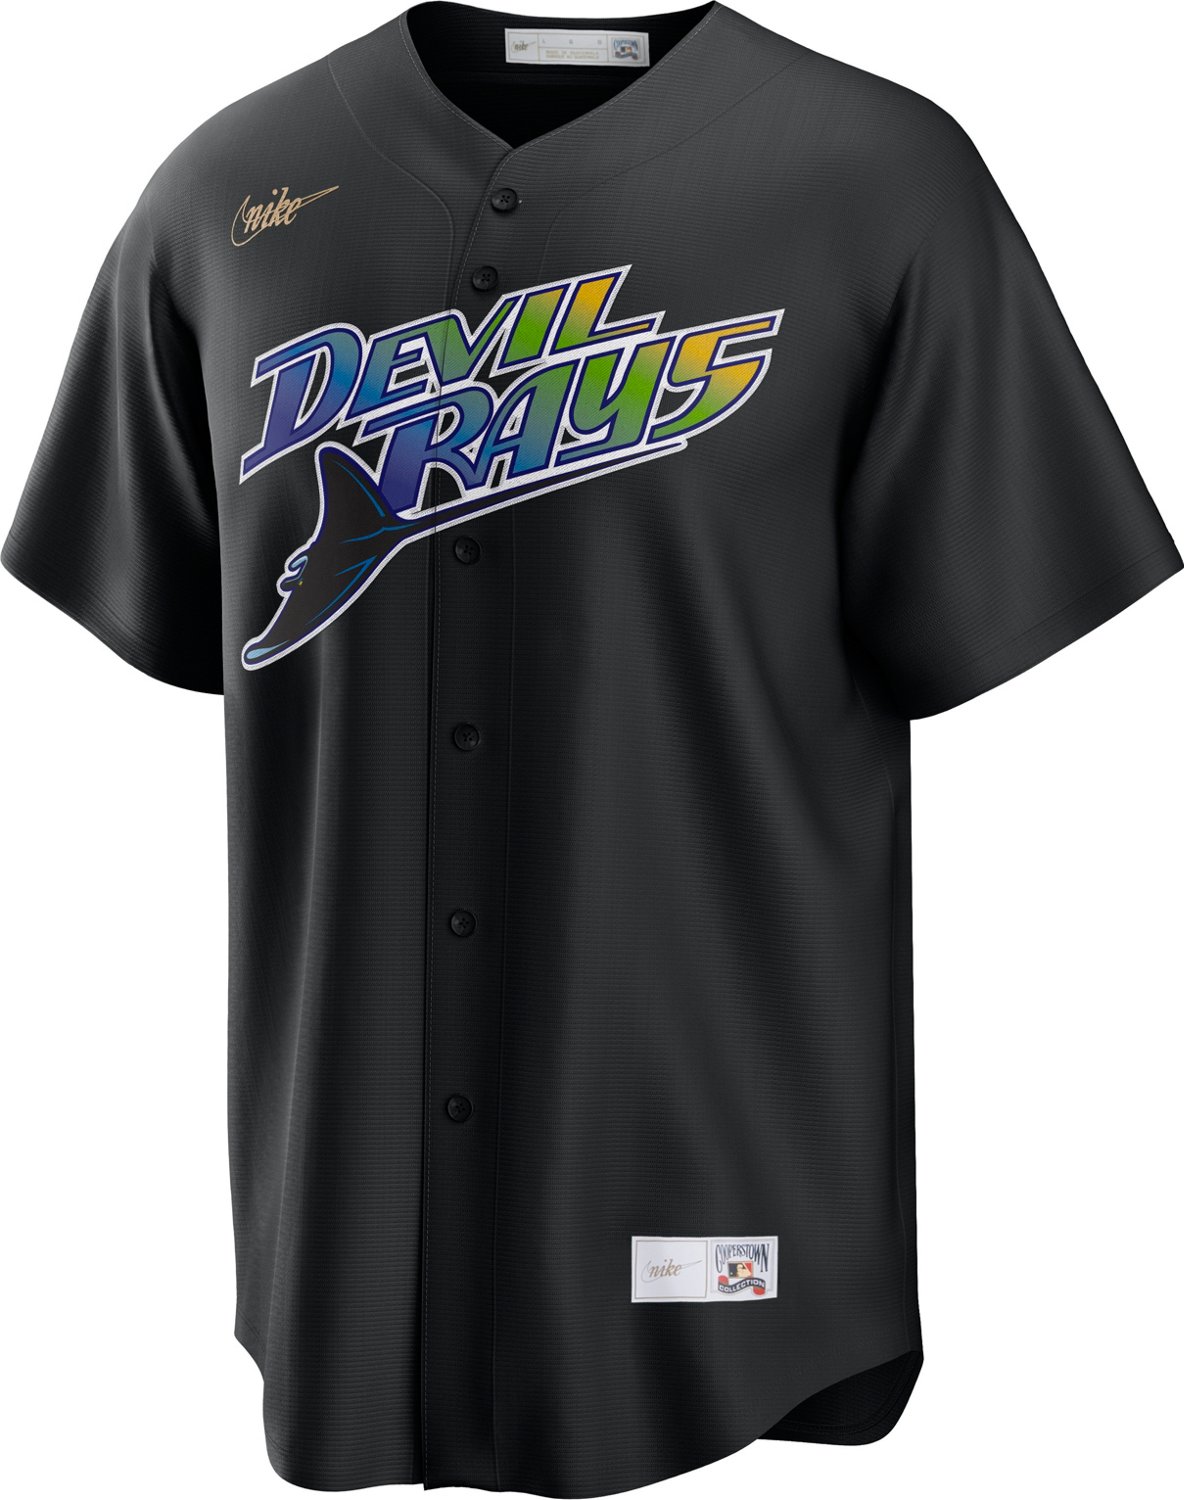 Nike Cooperstown Logo (MLB Tampa Bay Rays) Men's T-Shirt.